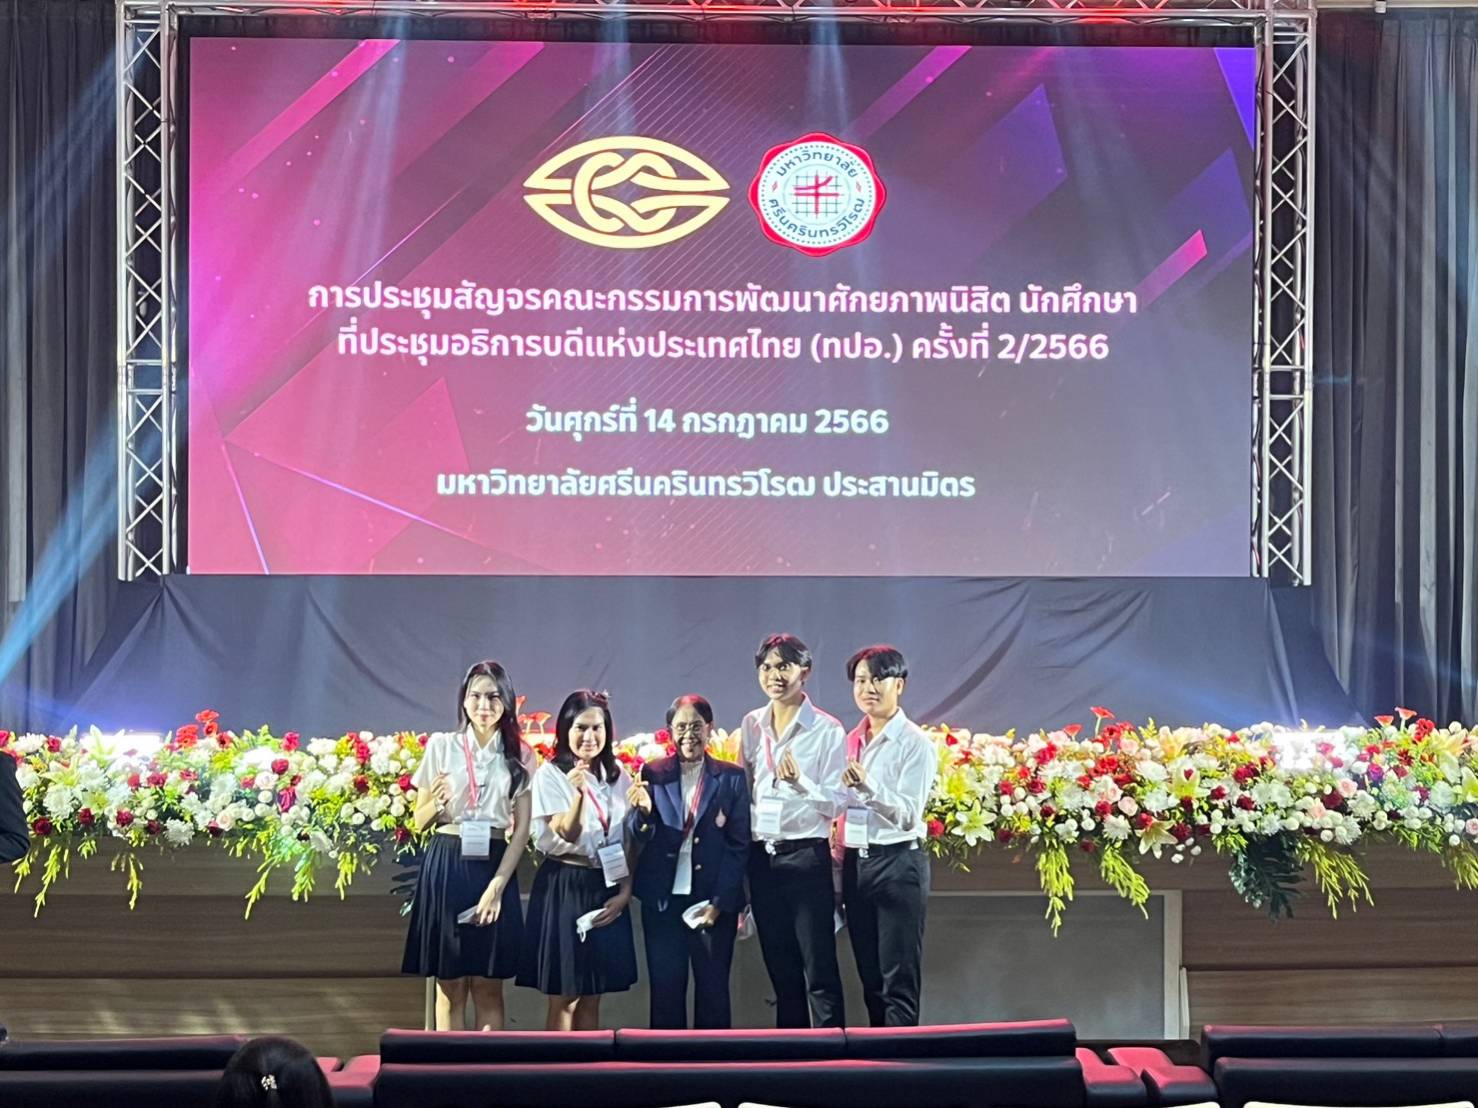 ศูนย์ Smile & Smart Center เข้าร่วมประชุมสัญจรกรรมการพัฒนาศักยภาพนิสิตนักศึกษา ที่ประชุมอธิการบดีแห่งประเทศไทย ครั้งที่ 2/2566